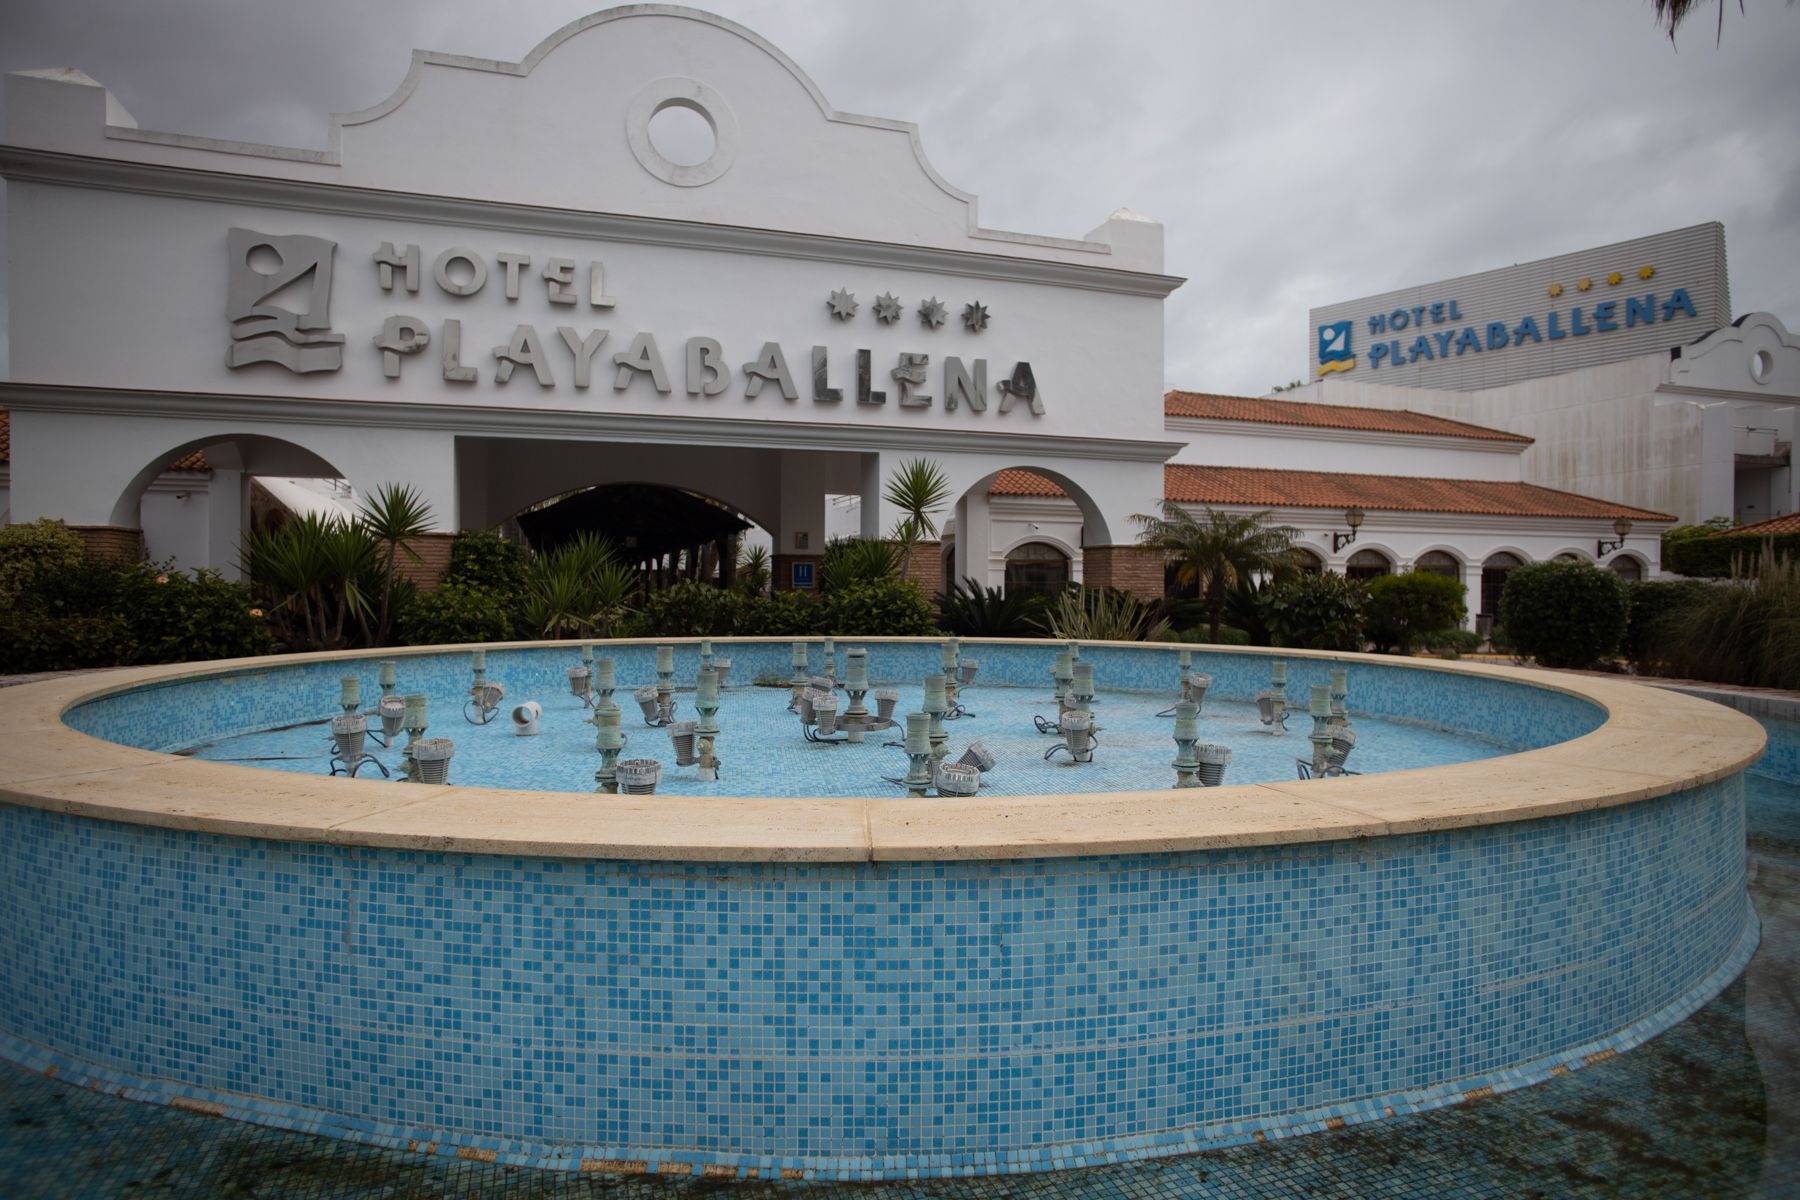 El hotel Playaballena, comprado por Amancio Ortega.